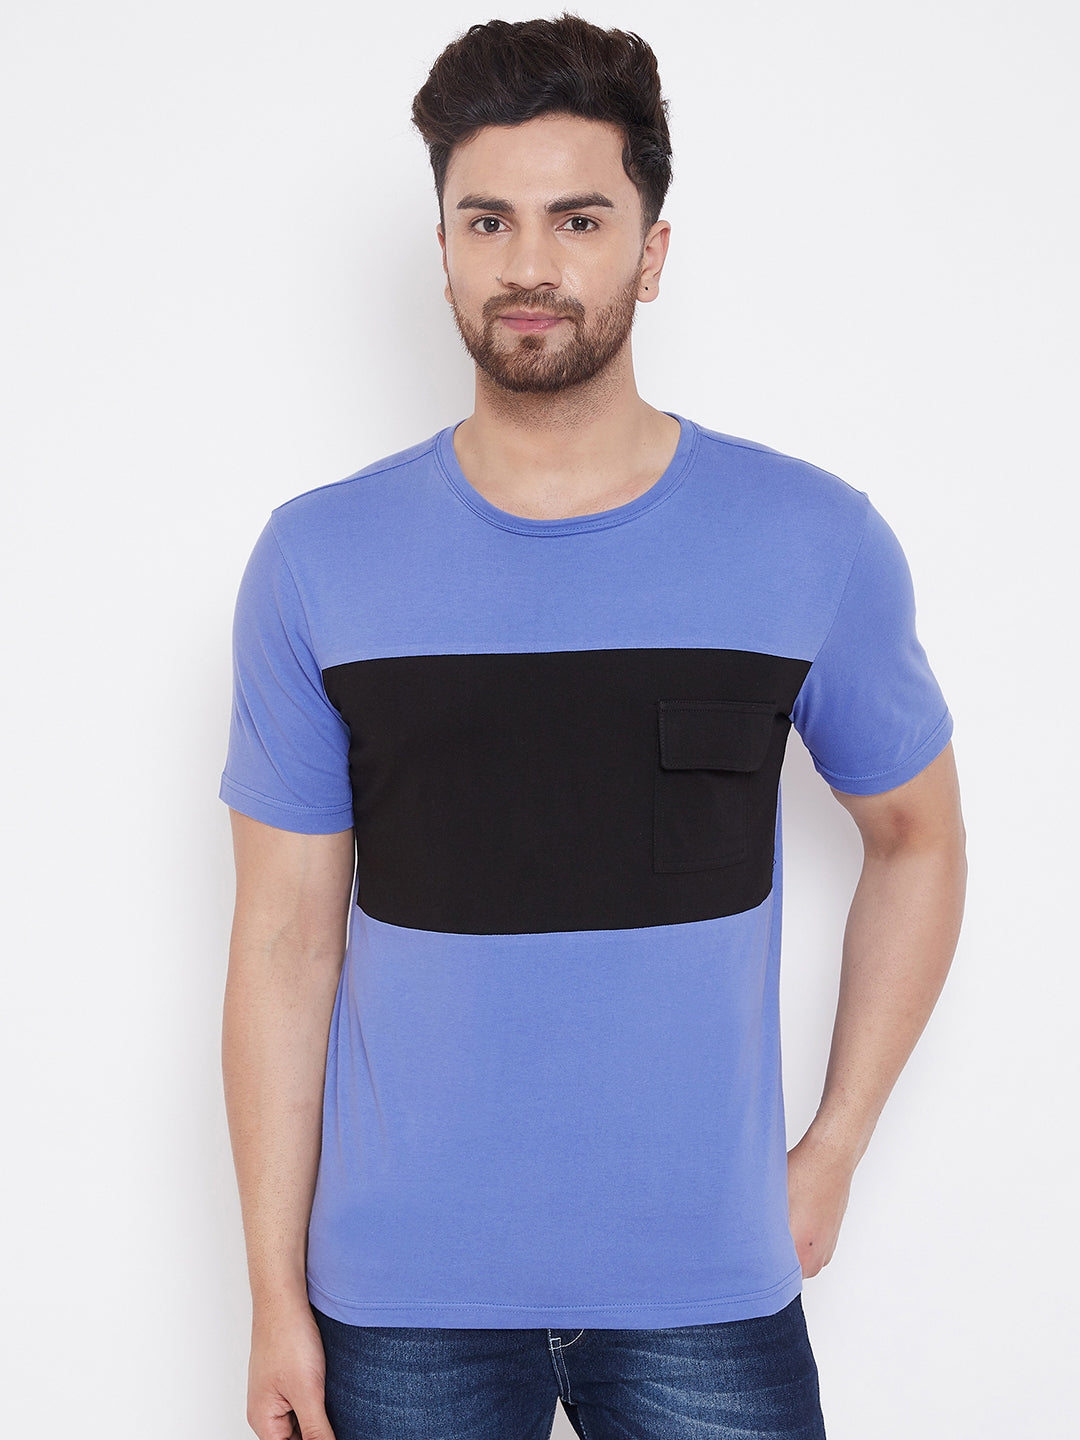 Blue/Black Men's Half Sleeves Round Neck T-Shirt